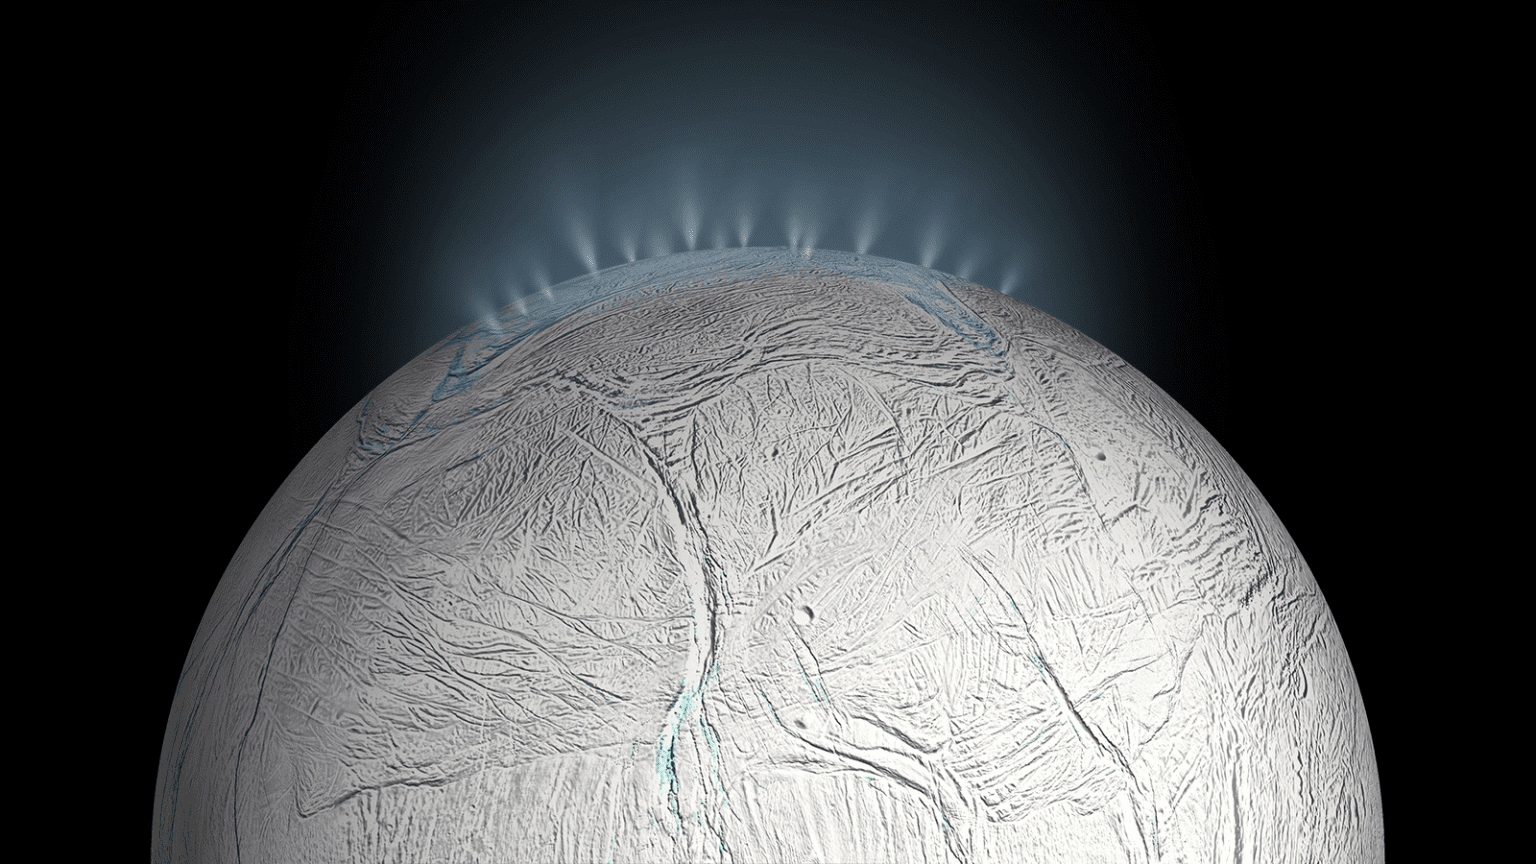 Umjetnikov dojam  vodenih gejzira na Enceladusu koje je NASA-ina svemirska letjelica slikala nekoliko puta. Znanstvenici vjeruju da su svjetovi s podzemnim oceanima poput Encelada pogodniji za stvaranje života od planeta s površinskim oceanima poput Zemlje. Izvori: NASA / JPL-Caltech